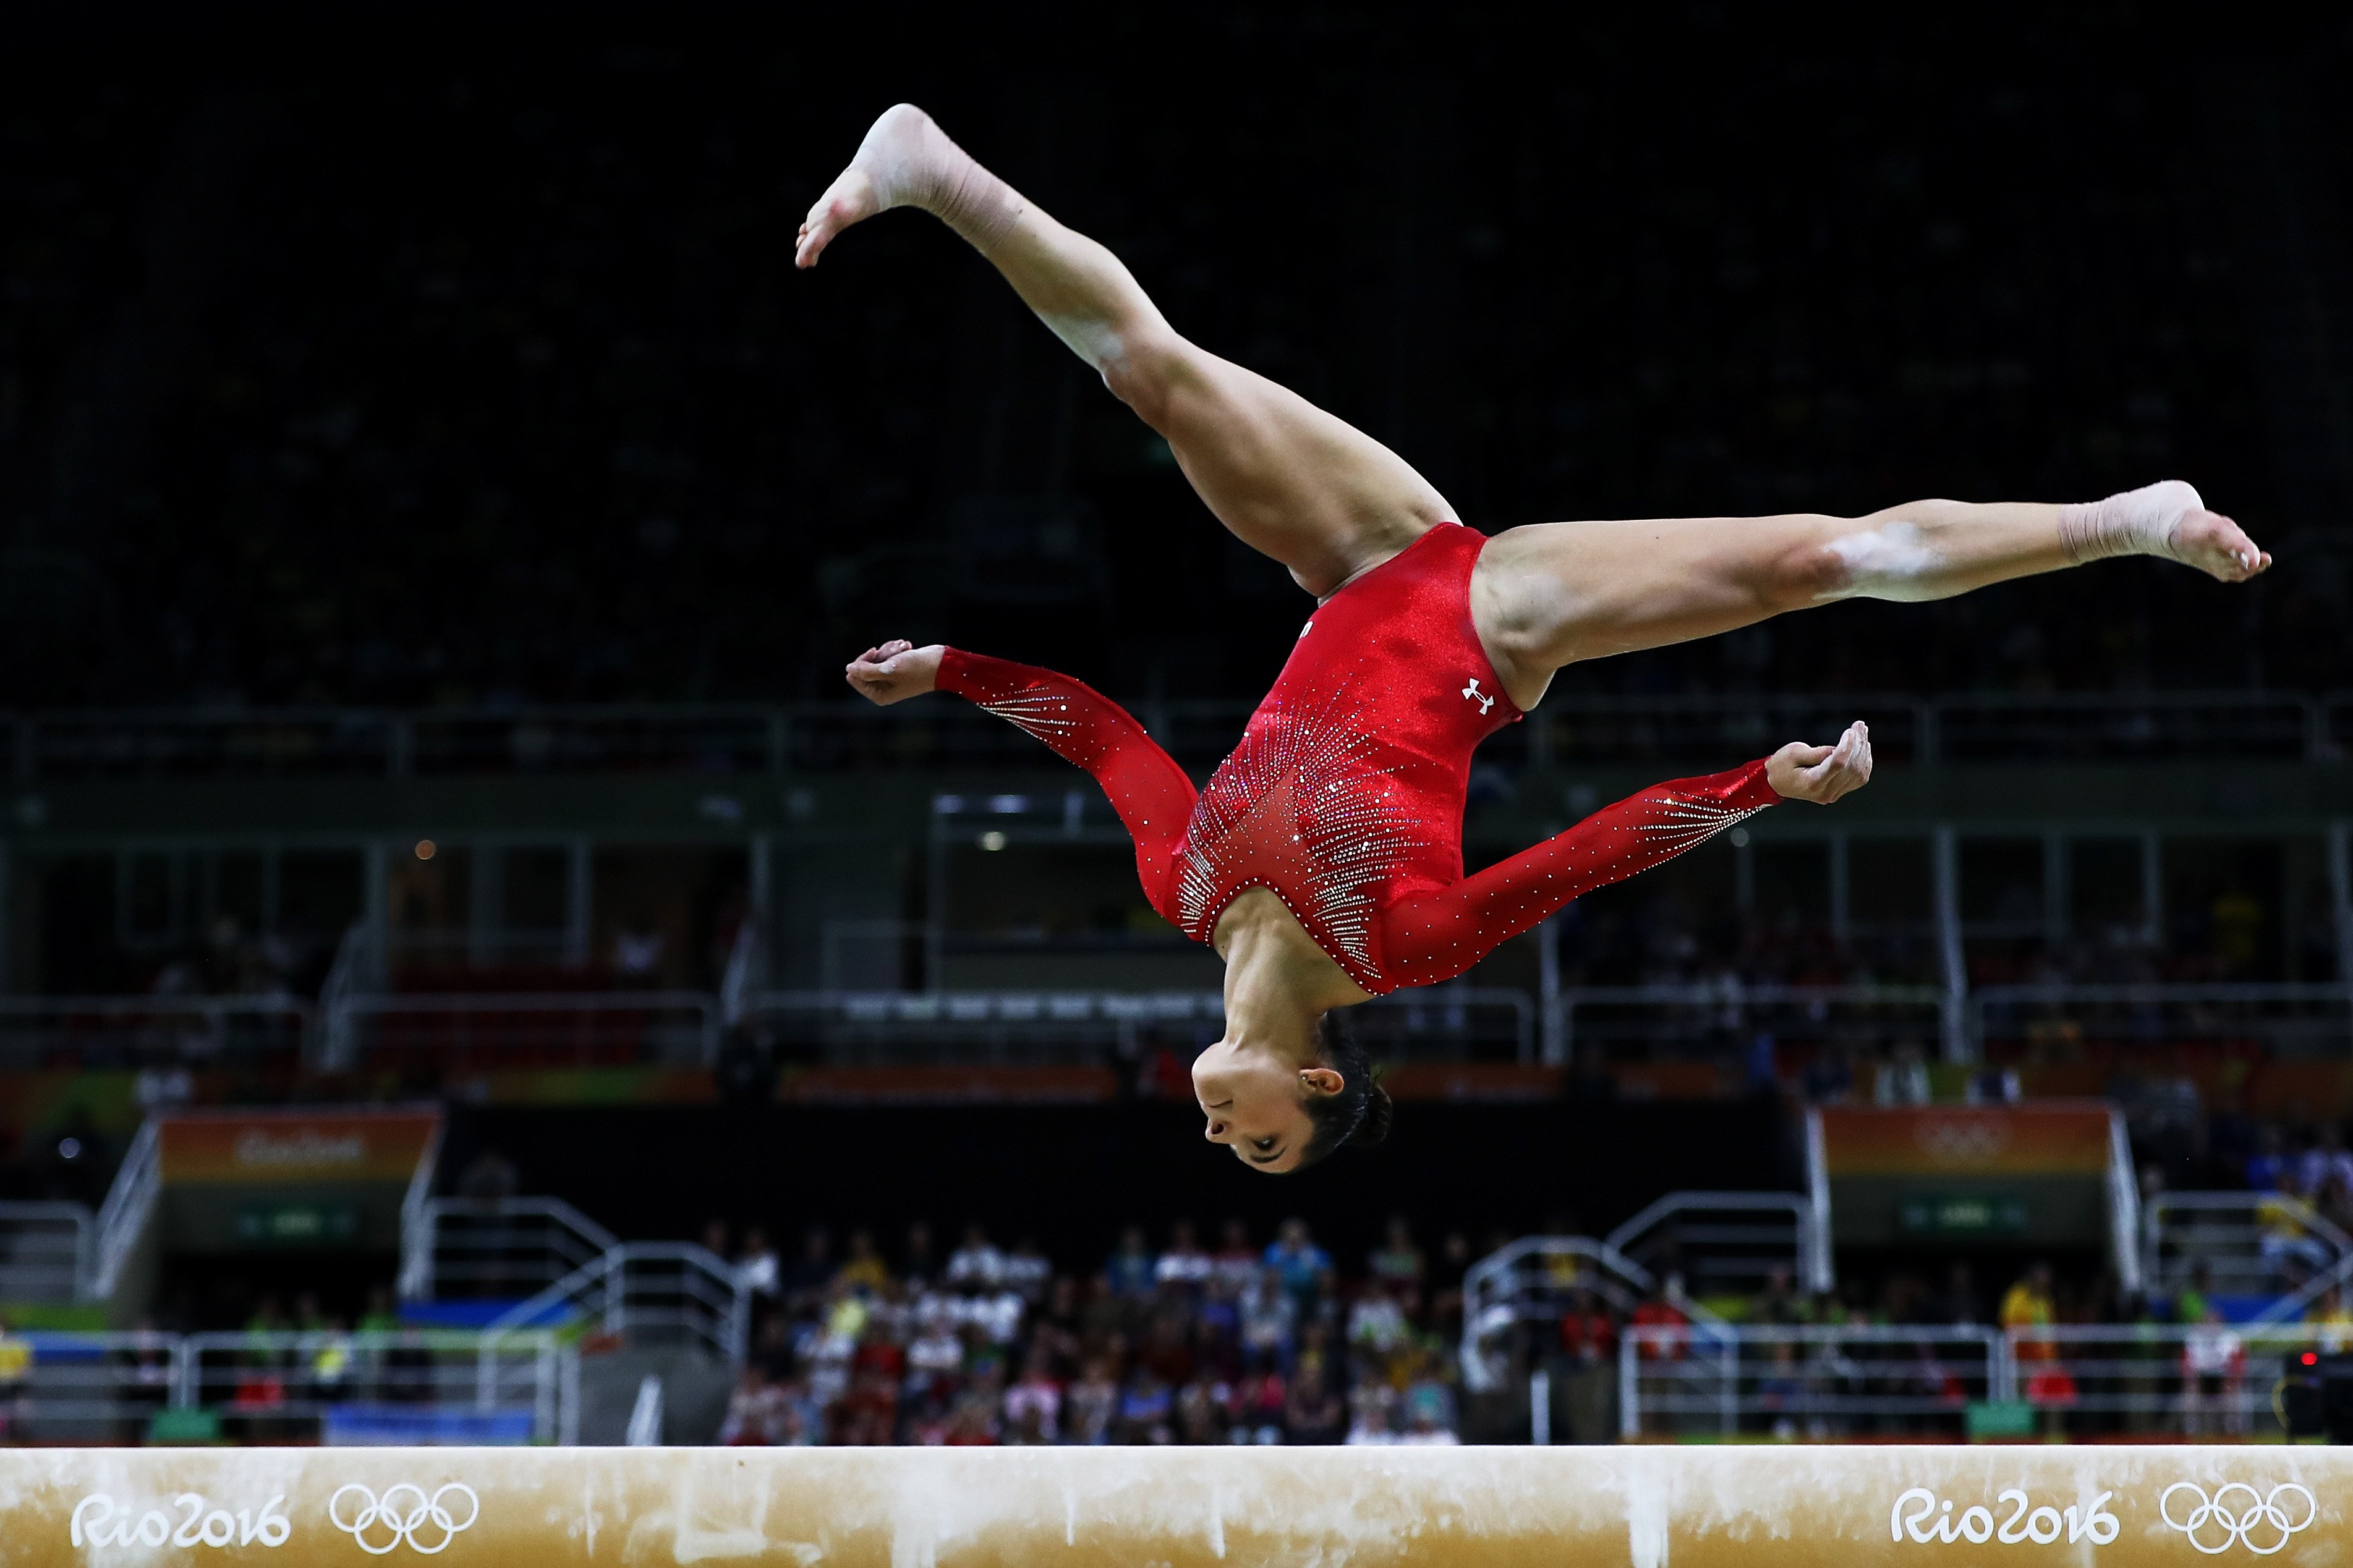 Люди гимнасты. Спорт гимнастика. Художественный гимнаст. Гимнасты мужчины. Спортивная гимнастика на Олимпийских играх.